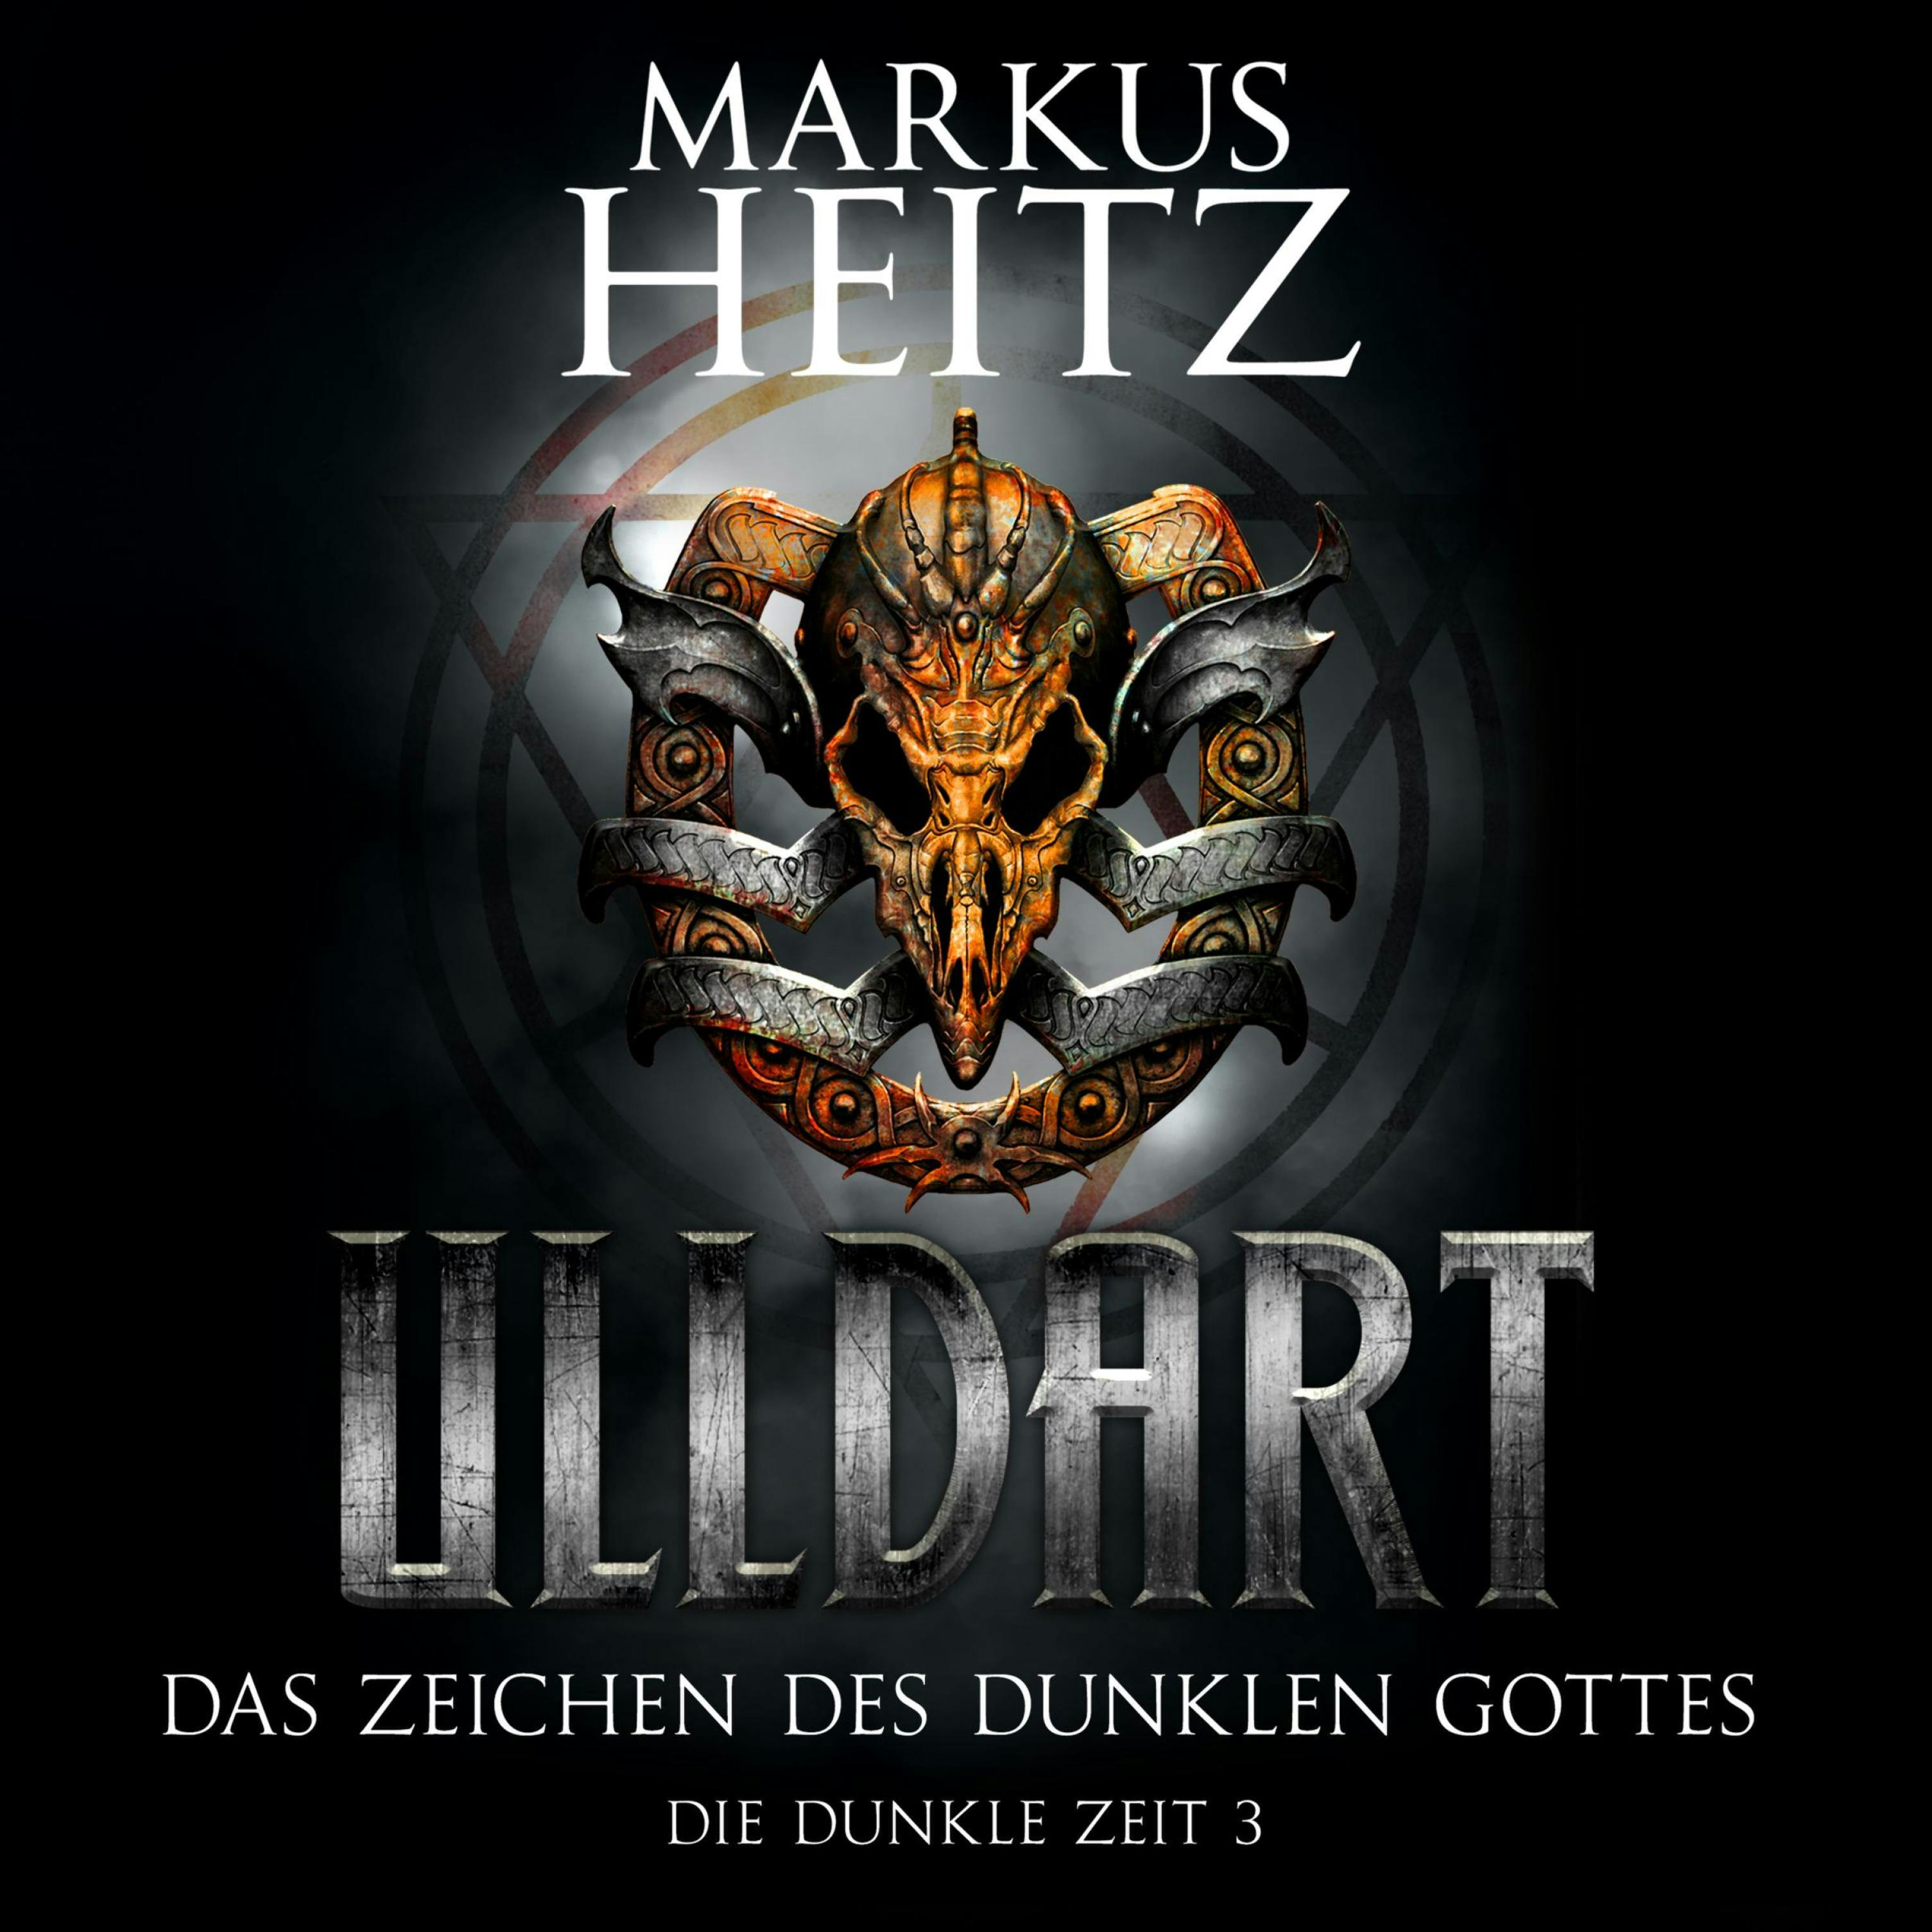 Das Zeichen des dunklen Gottes: Die Dunkle Zeit 3 - Markus Heitz